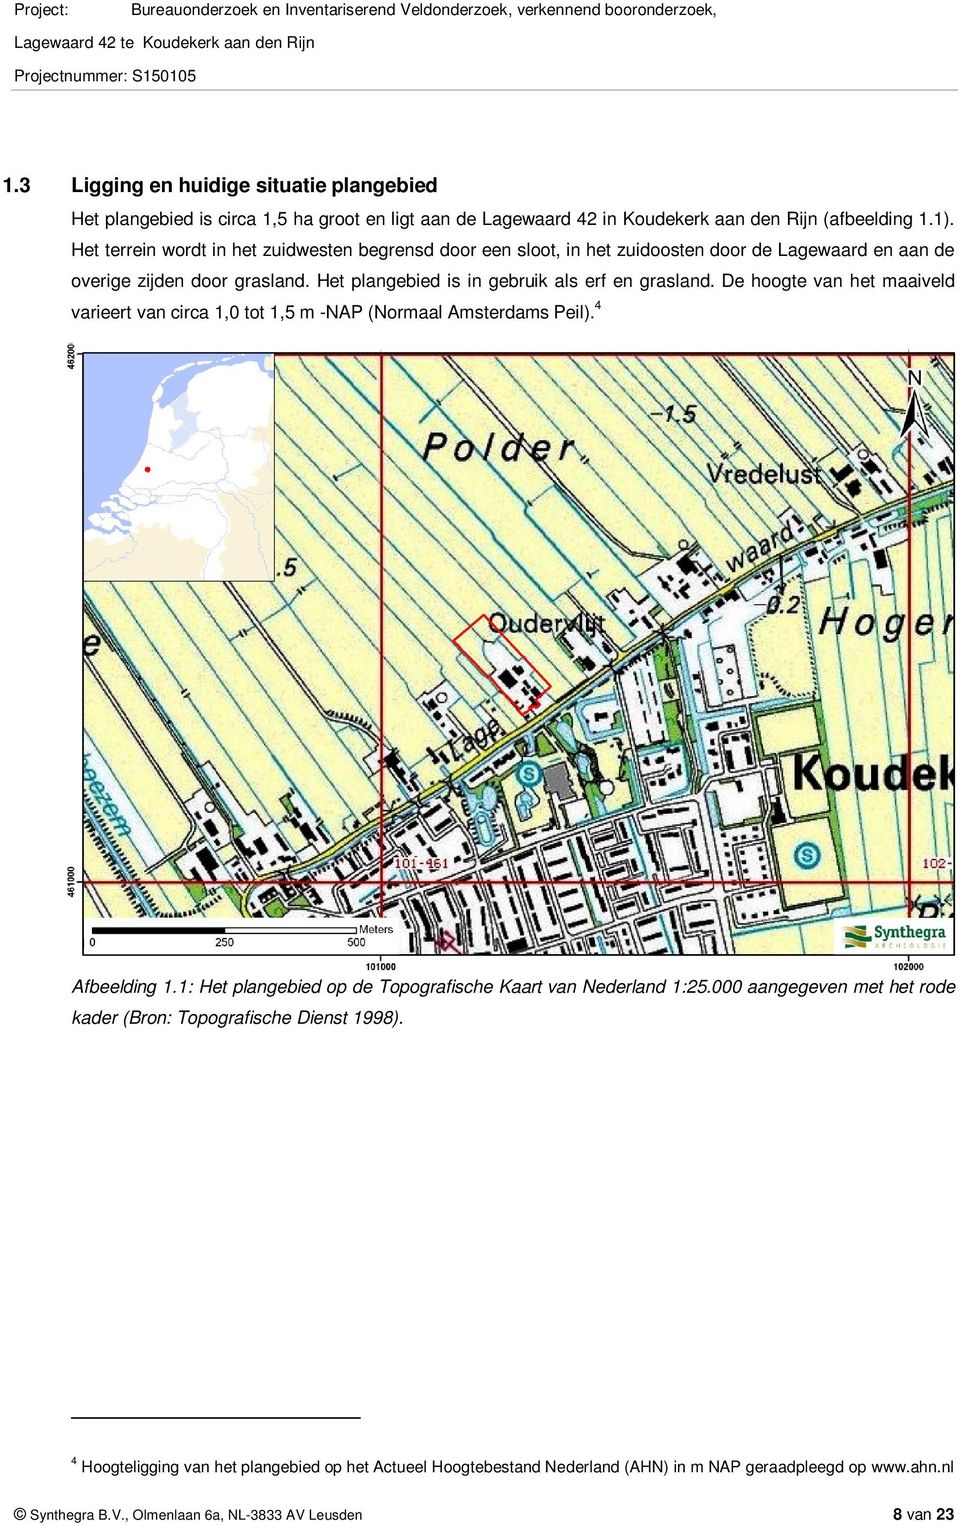 De hoogte van het maaiveld varieert van circa 1, tot 1,5 m -NAP (Normaal Amsterdams Peil). 4 Afbeelding 1.1: Het plangebied op de Topografische Kaart van Nederland 1:25.